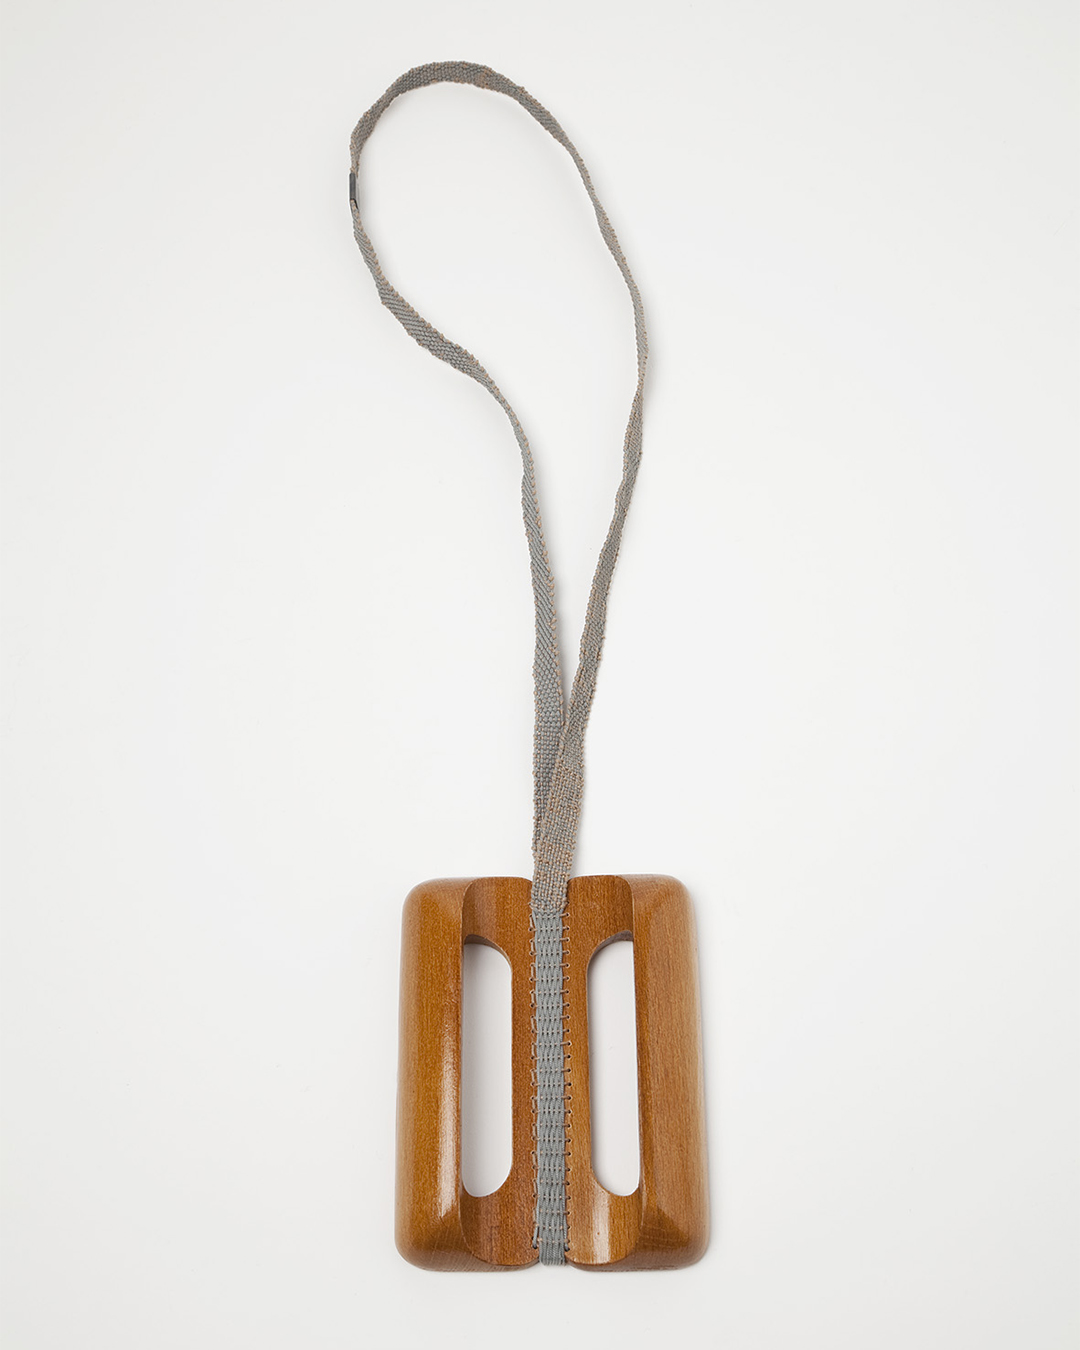 Barbara Schrobenhauser, Vom Tragen und Halten VI, 2018, necklace; used wooden handles, woven string, 470 x 90 x 20 mm, €700